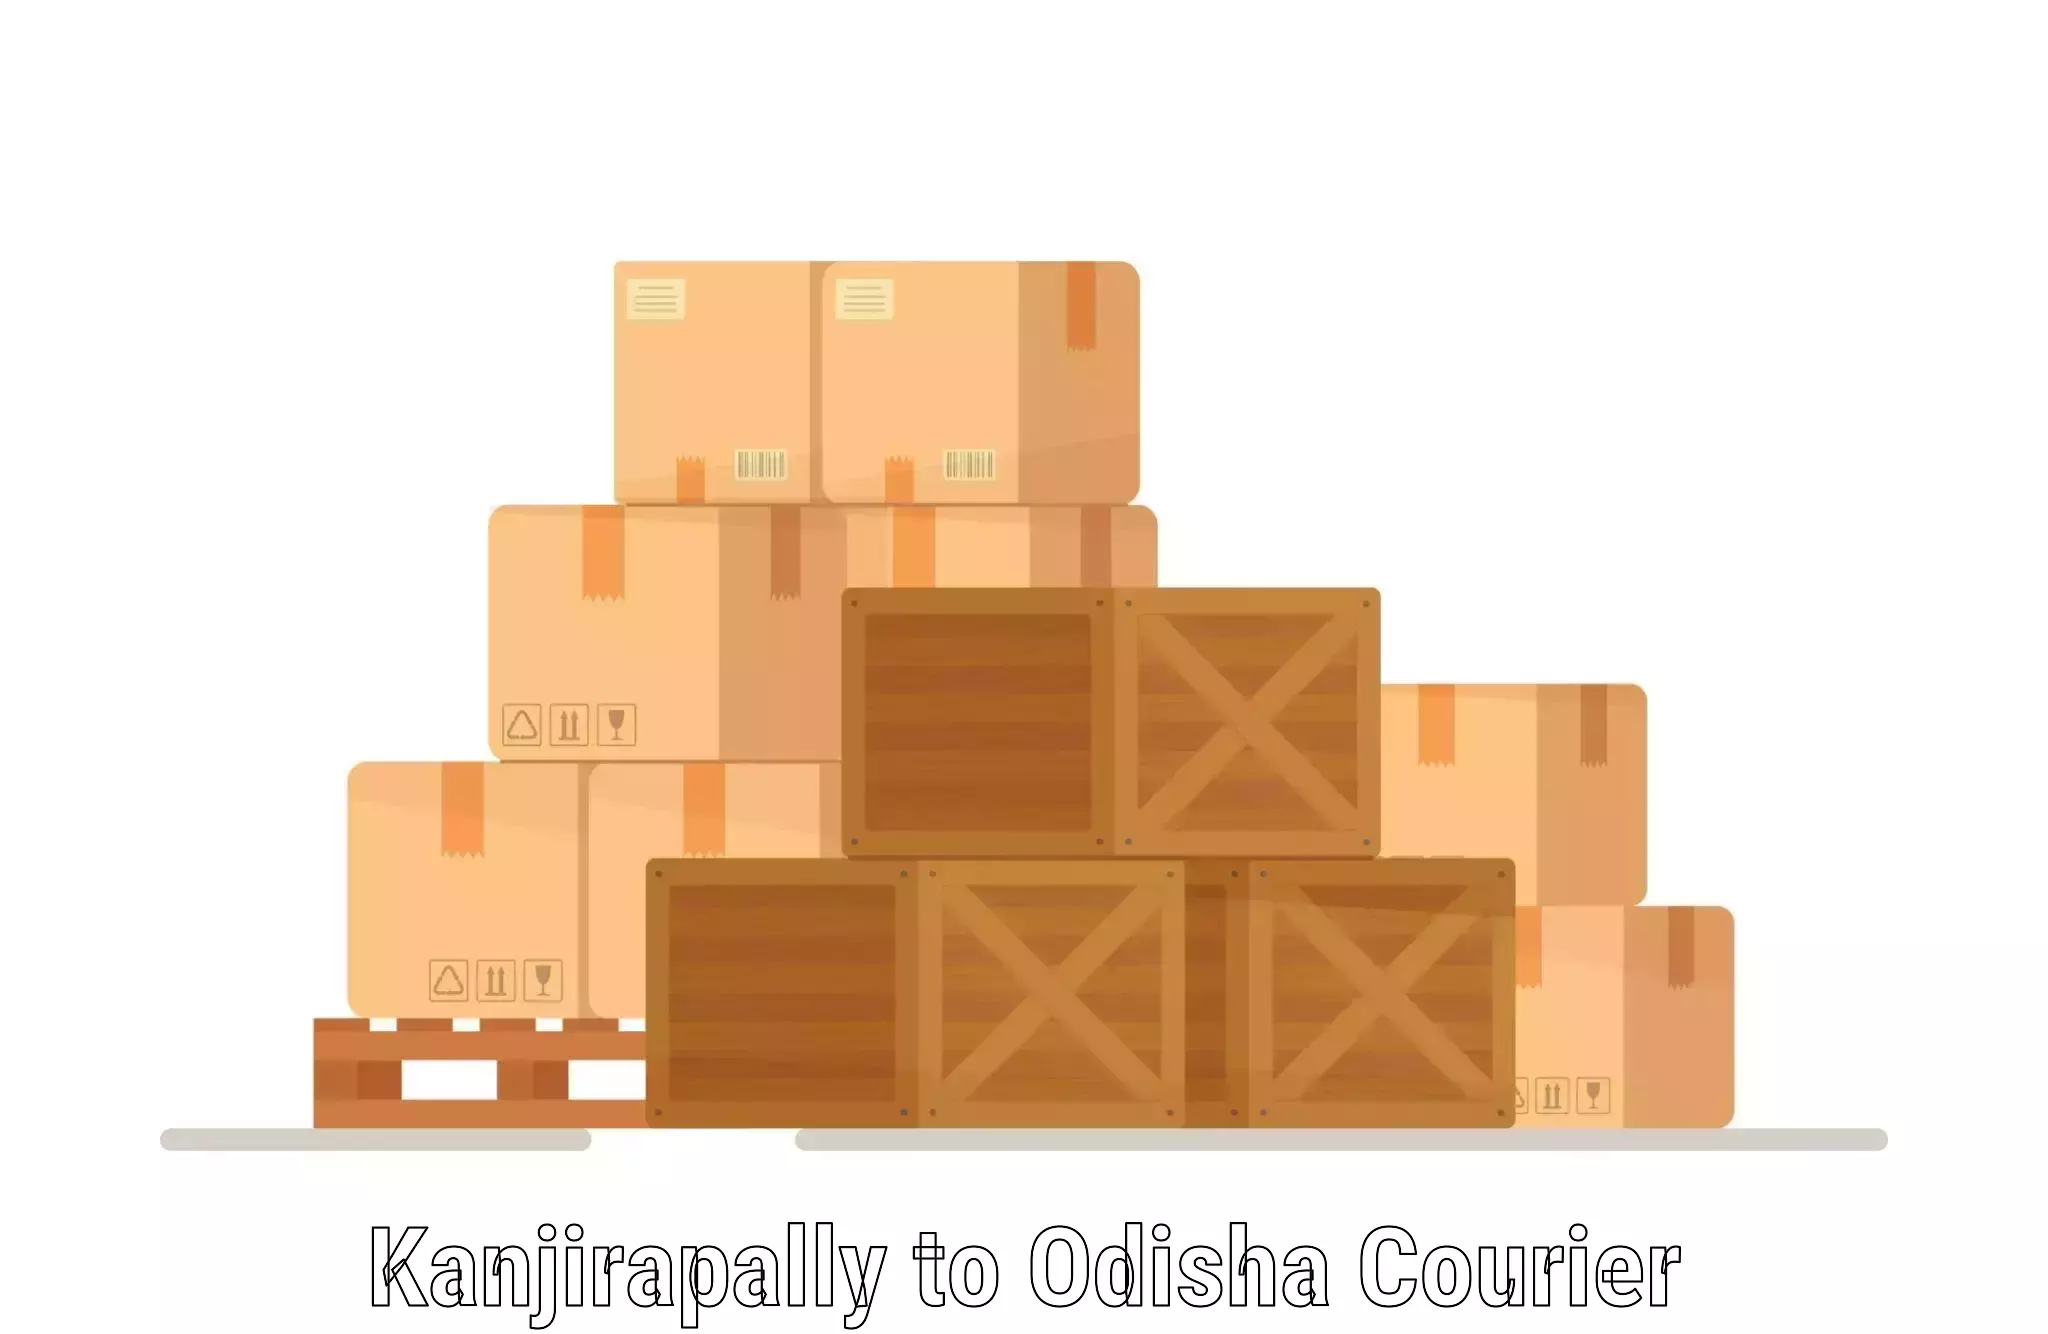 Full-service courier options Kanjirapally to Kodala